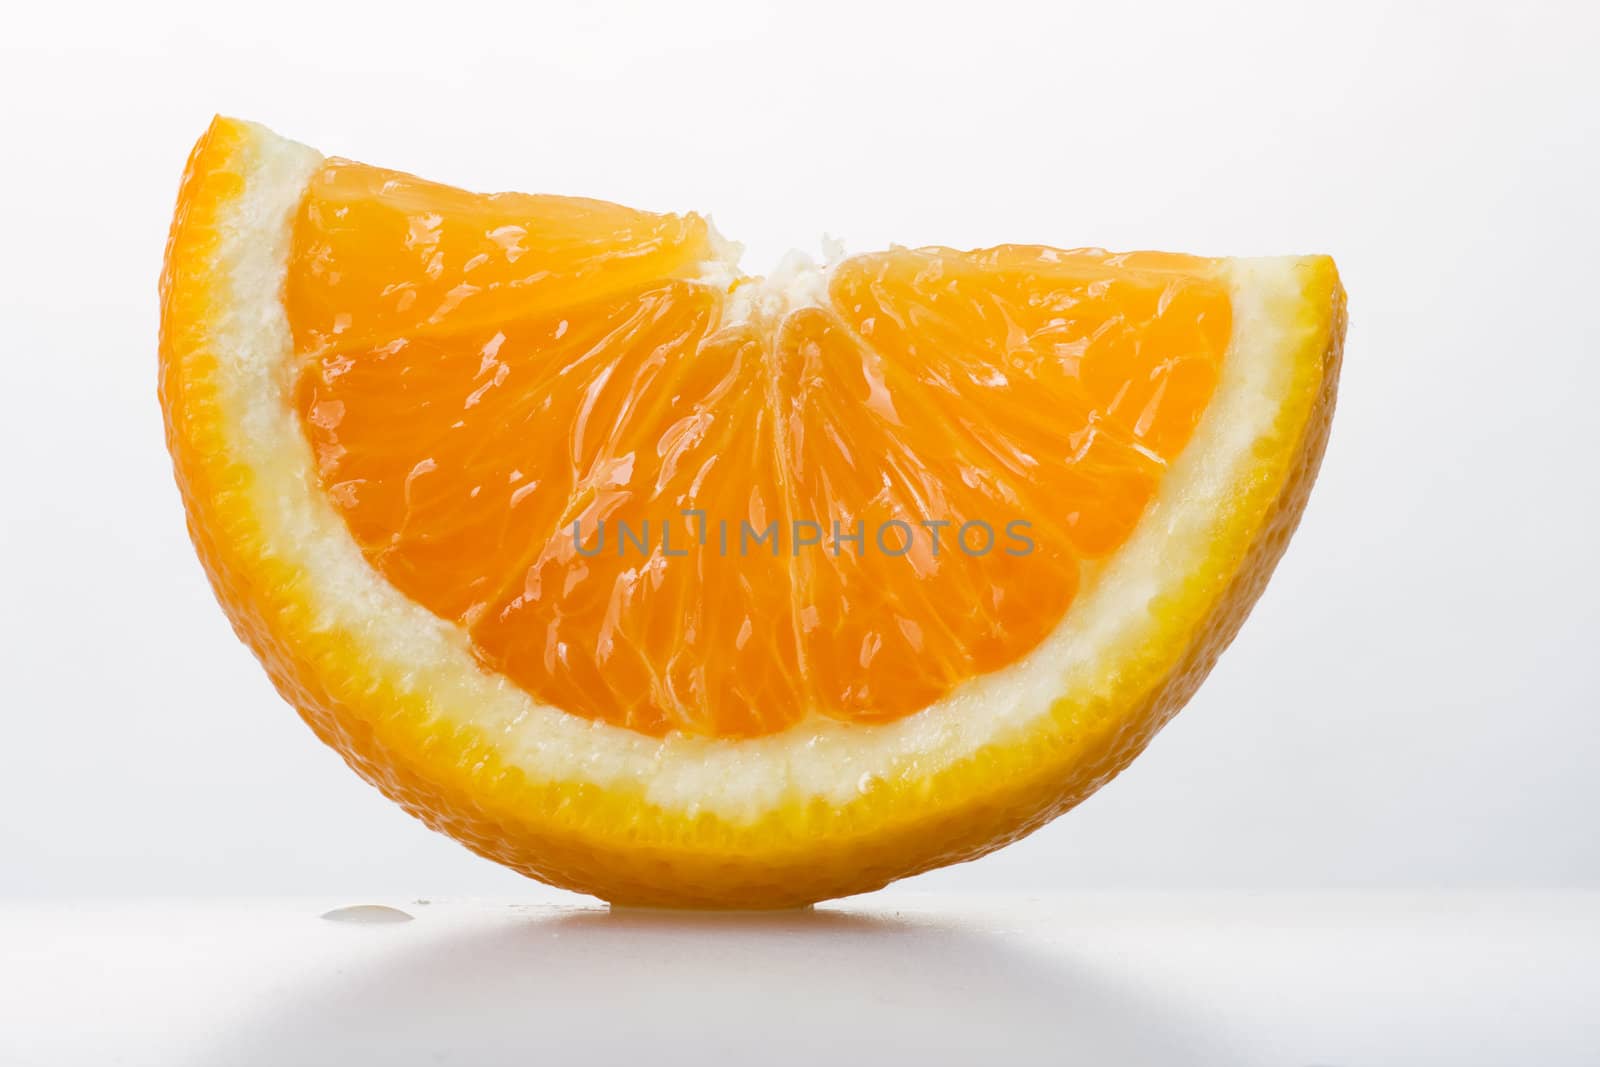 Sliced juicy orange on white background